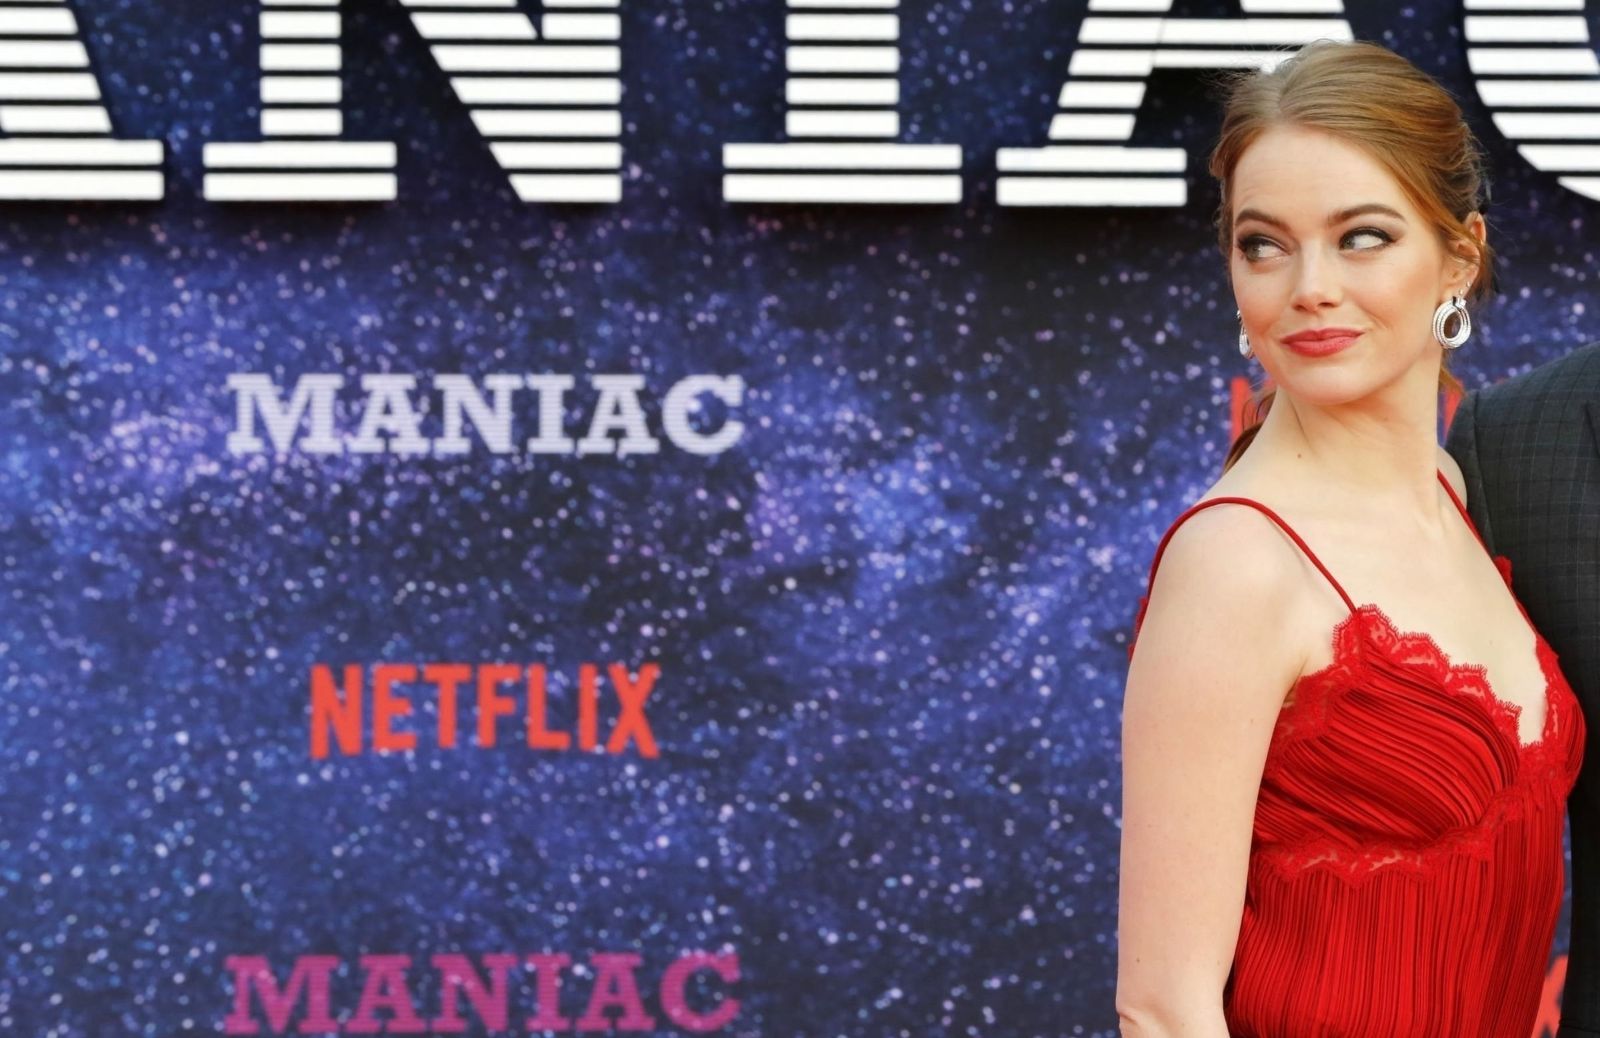 Serie tv di Netflix: tutto su Maniac, Emma Stone e i multiversi cerebrali